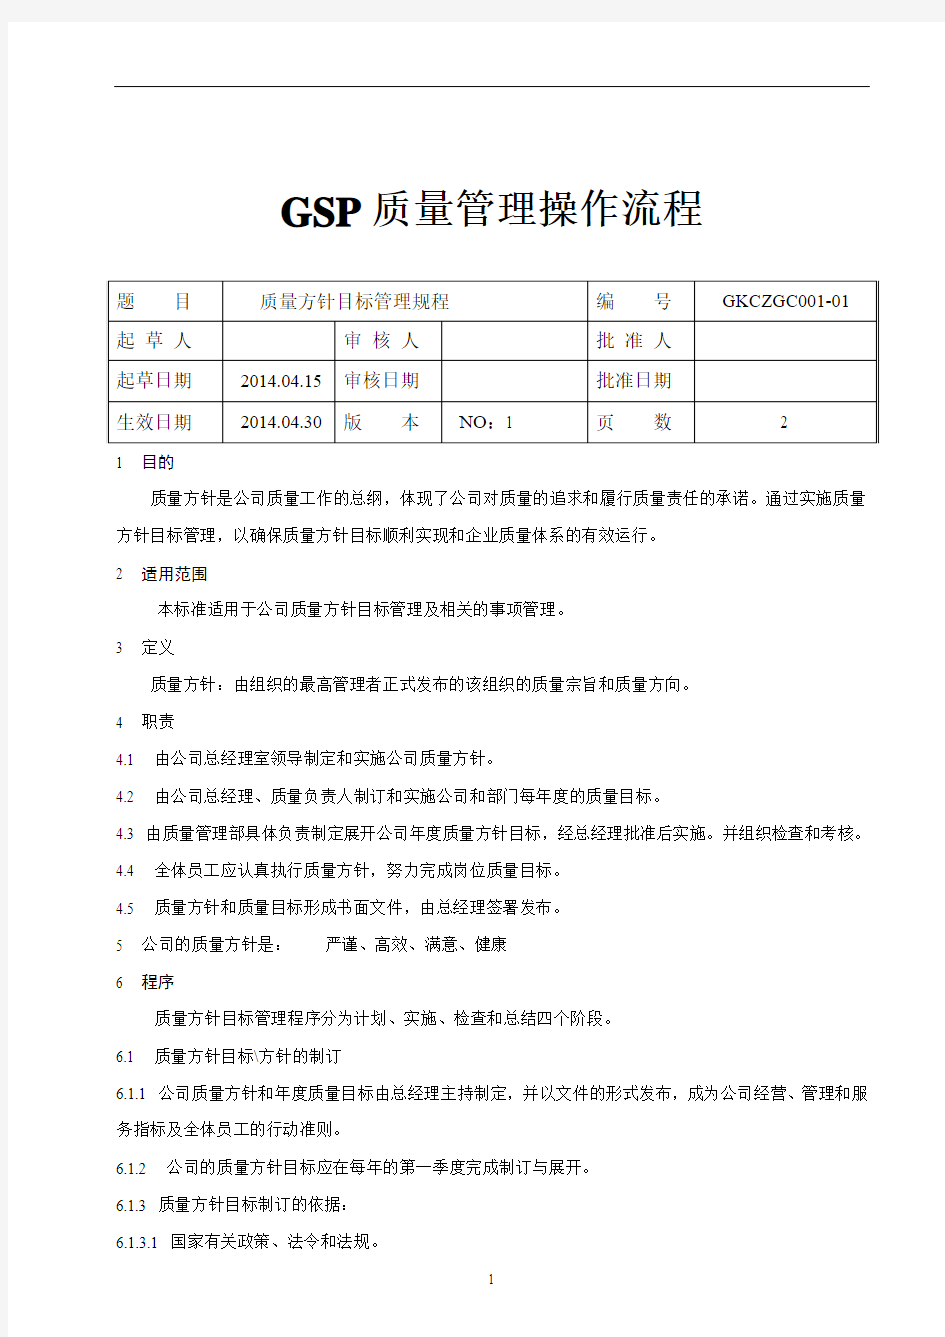 GSP质量管理操作规程